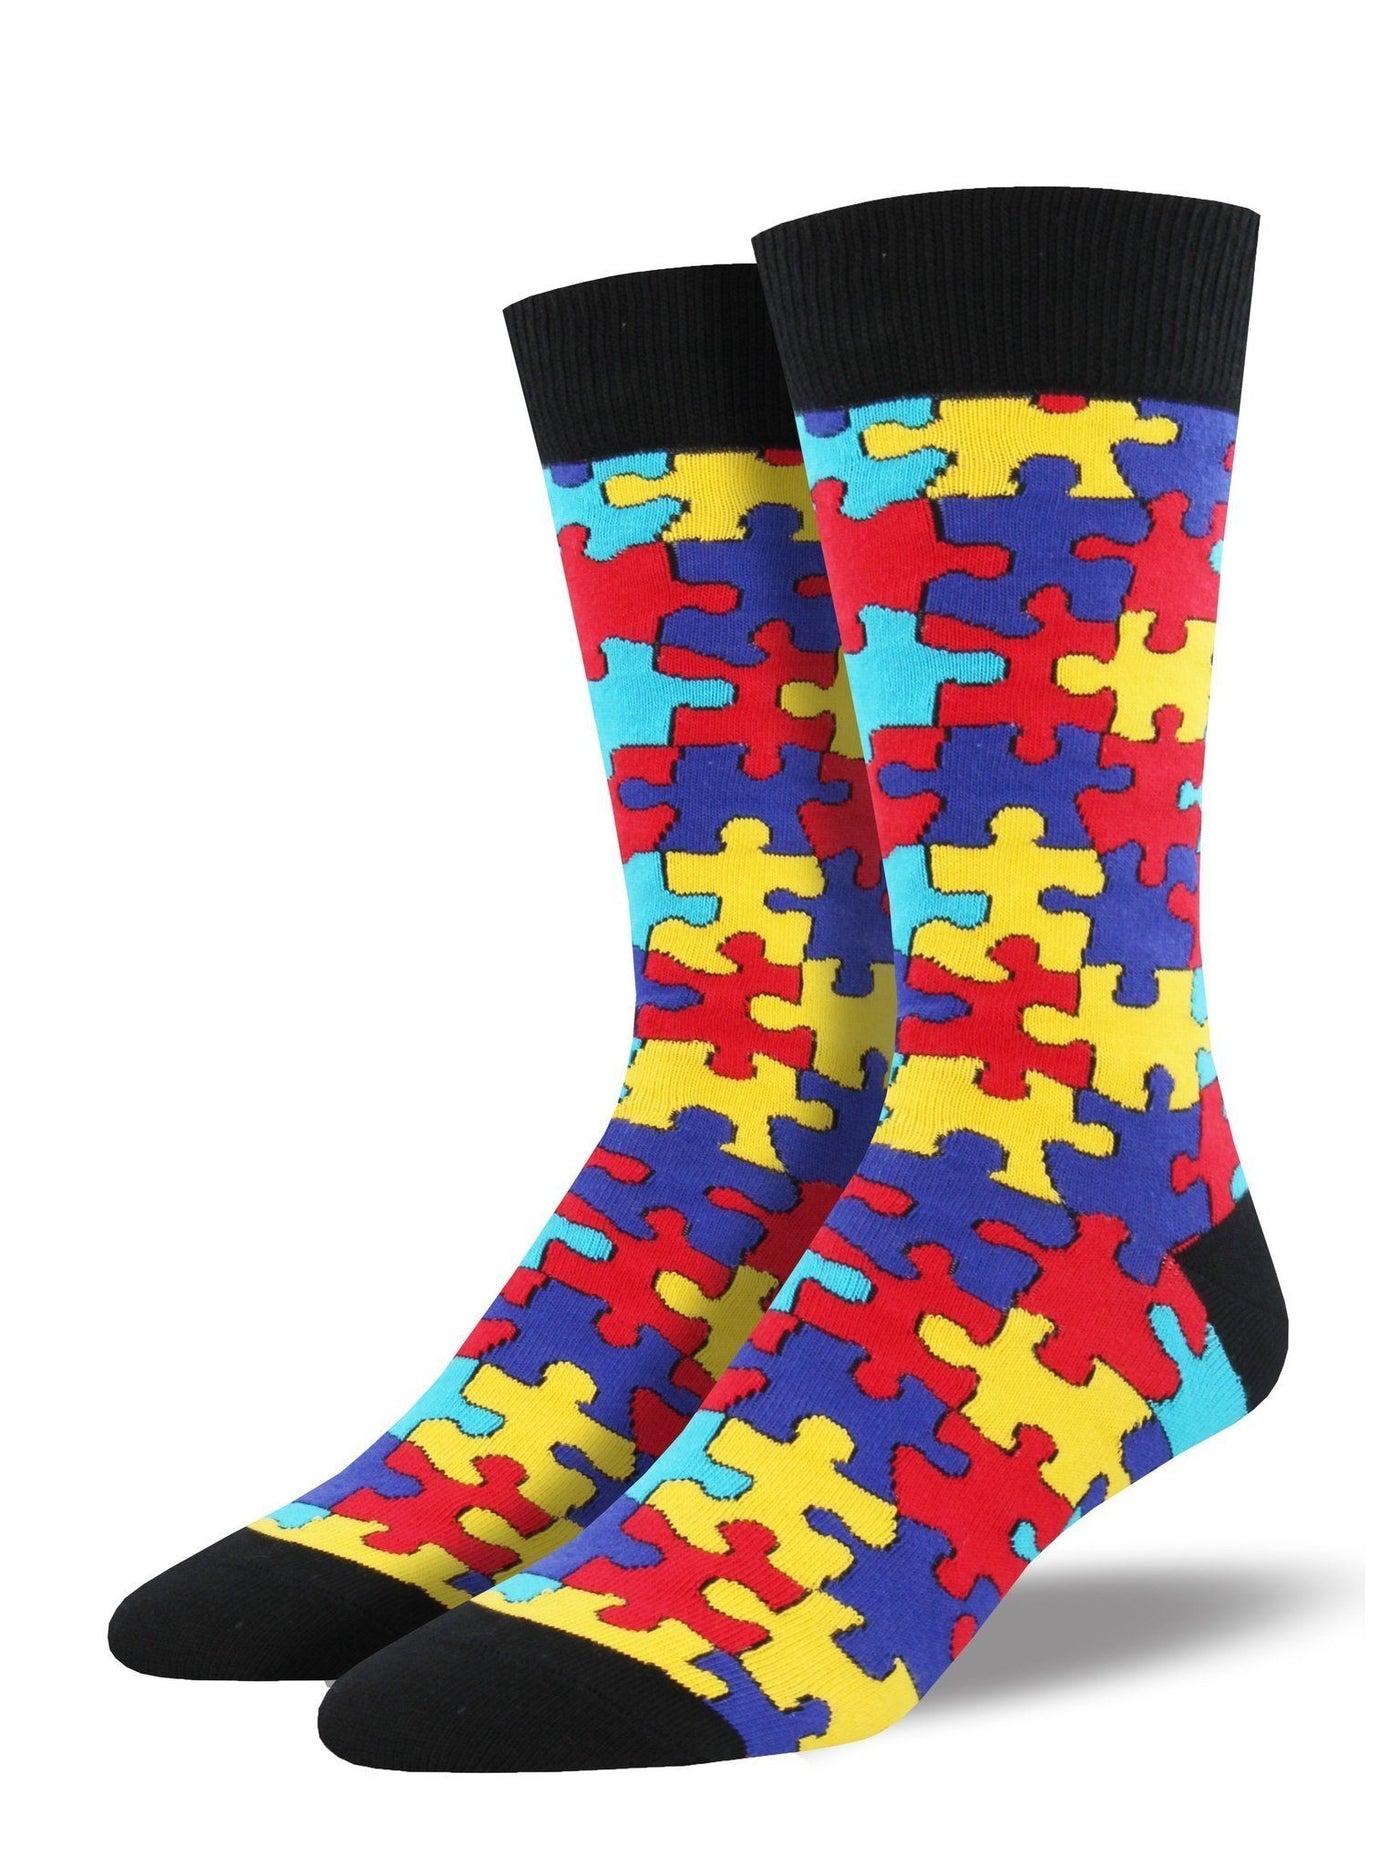 Socksmith - Puzzled Crew Socks | Men's - Knock Your Socks Off